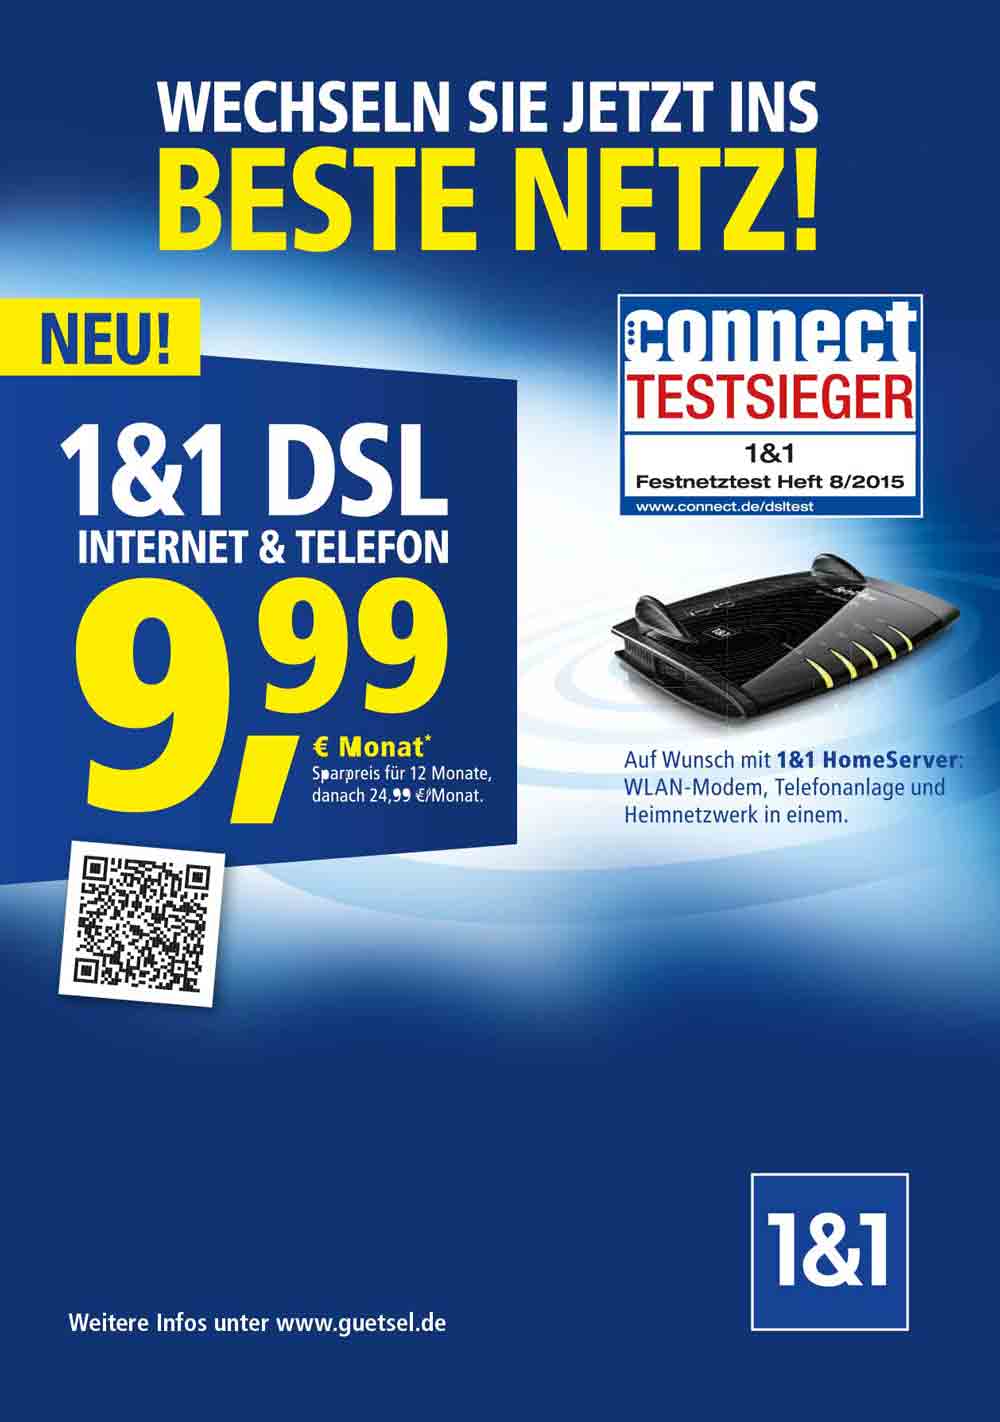 Anzeige: Das neue DSL vom Testsieger – jetzt günstiger und flexibler